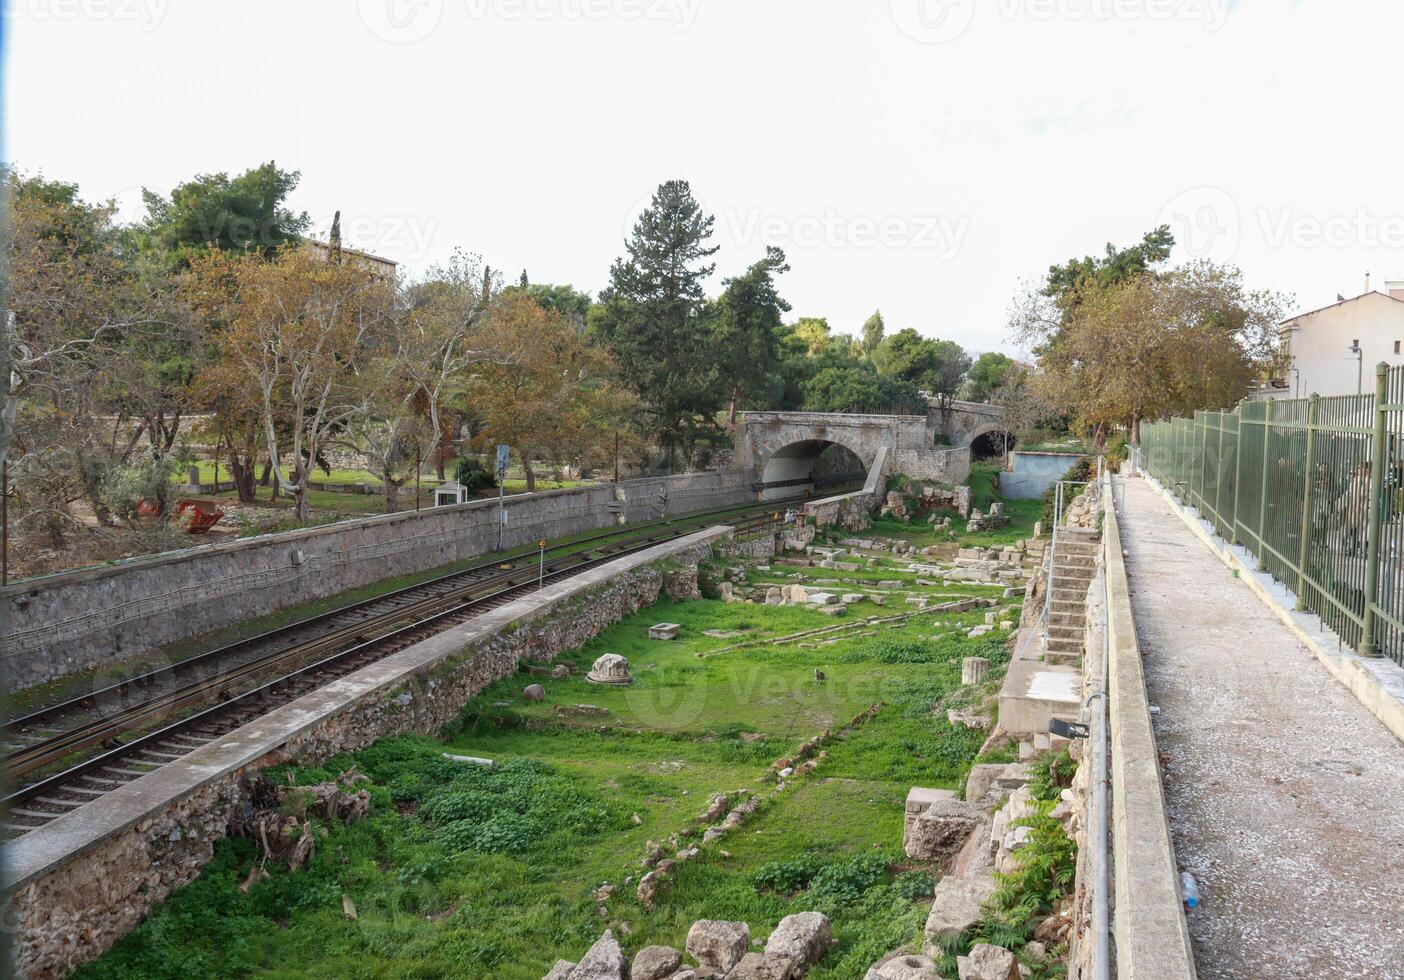 treno brani quello correre accanto il antico agorà nel Atene, Grecia foto